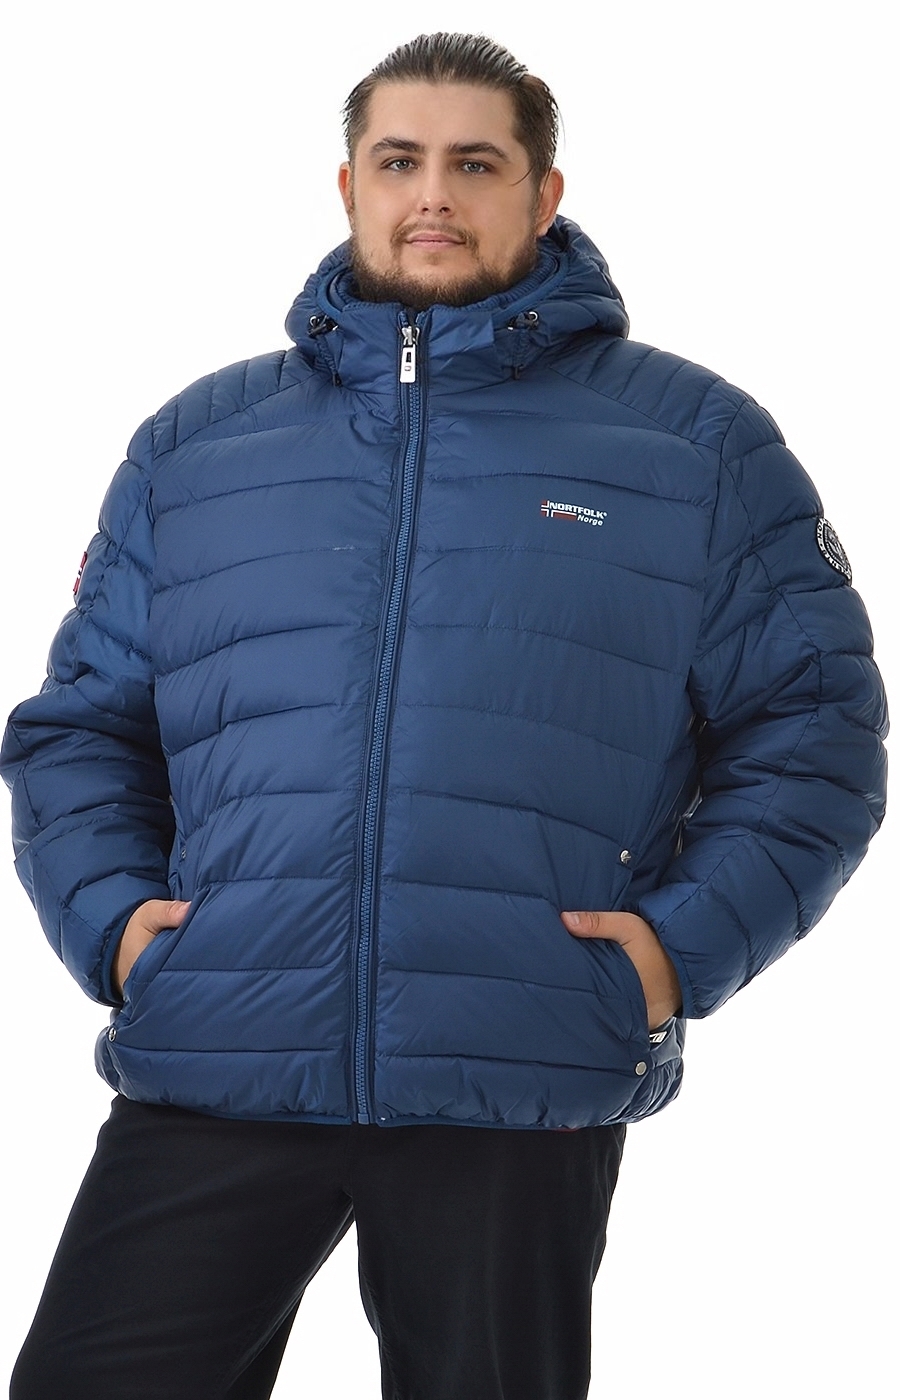 Зимняя куртка синего цвета большого размера